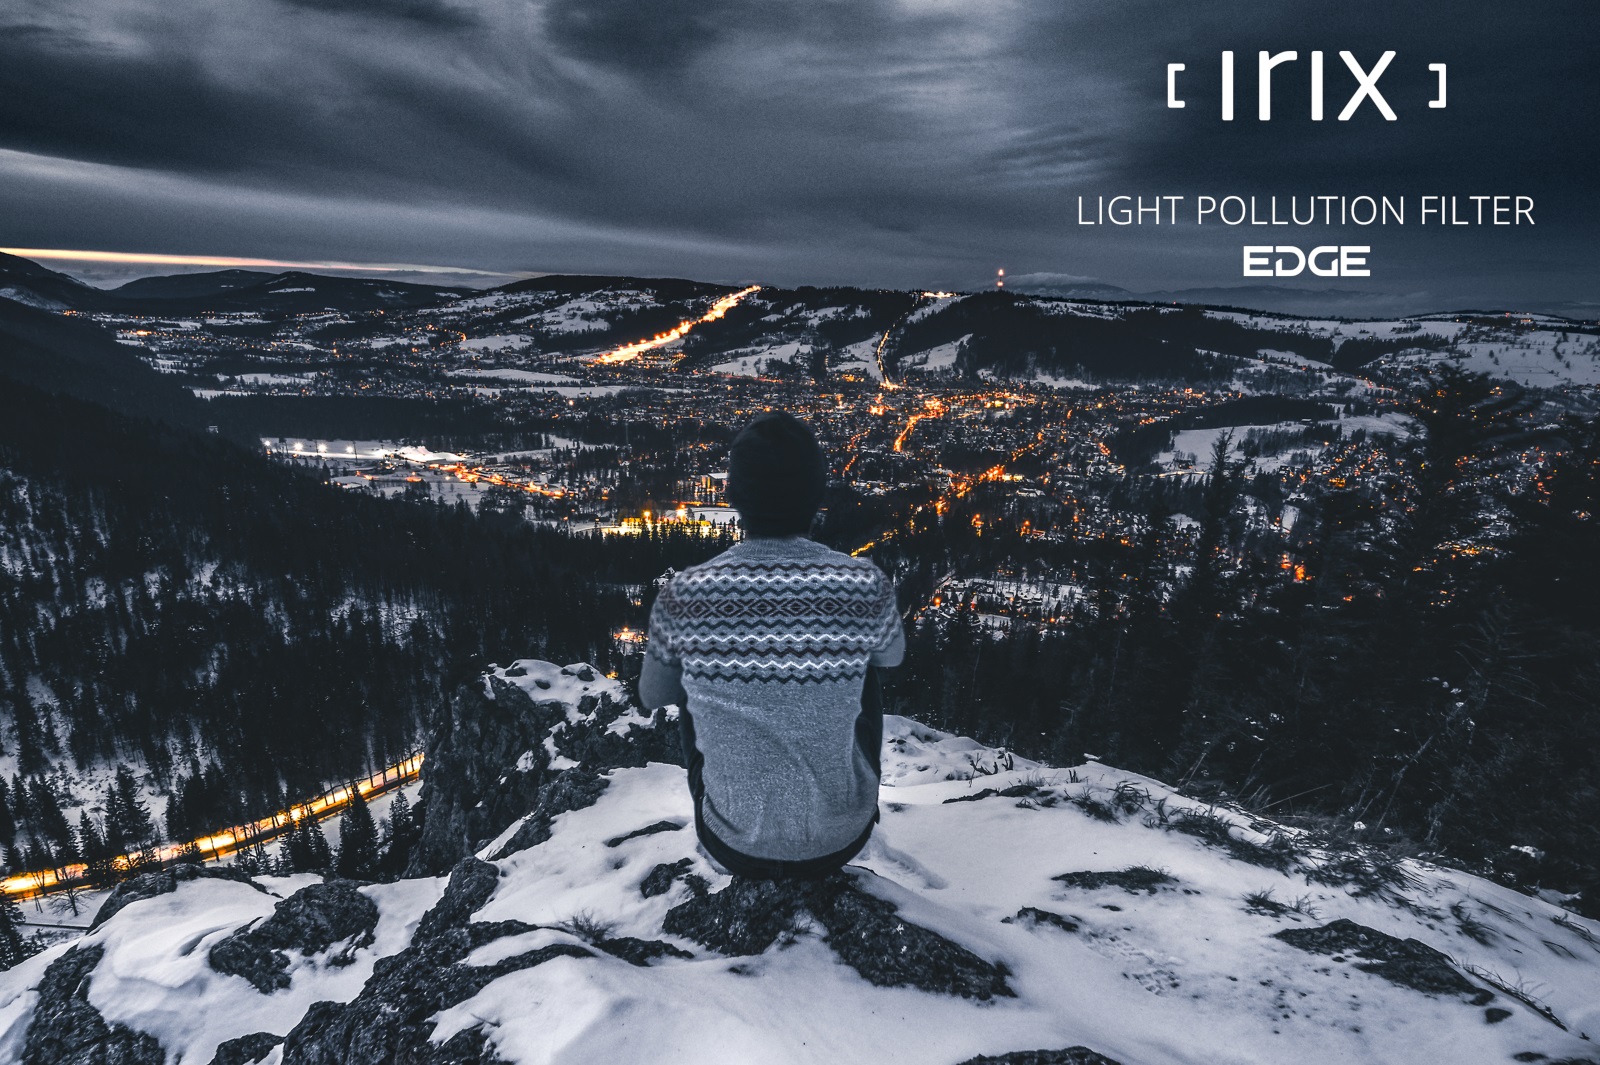 Irix Edge filtro de contaminación lumínica 95mm